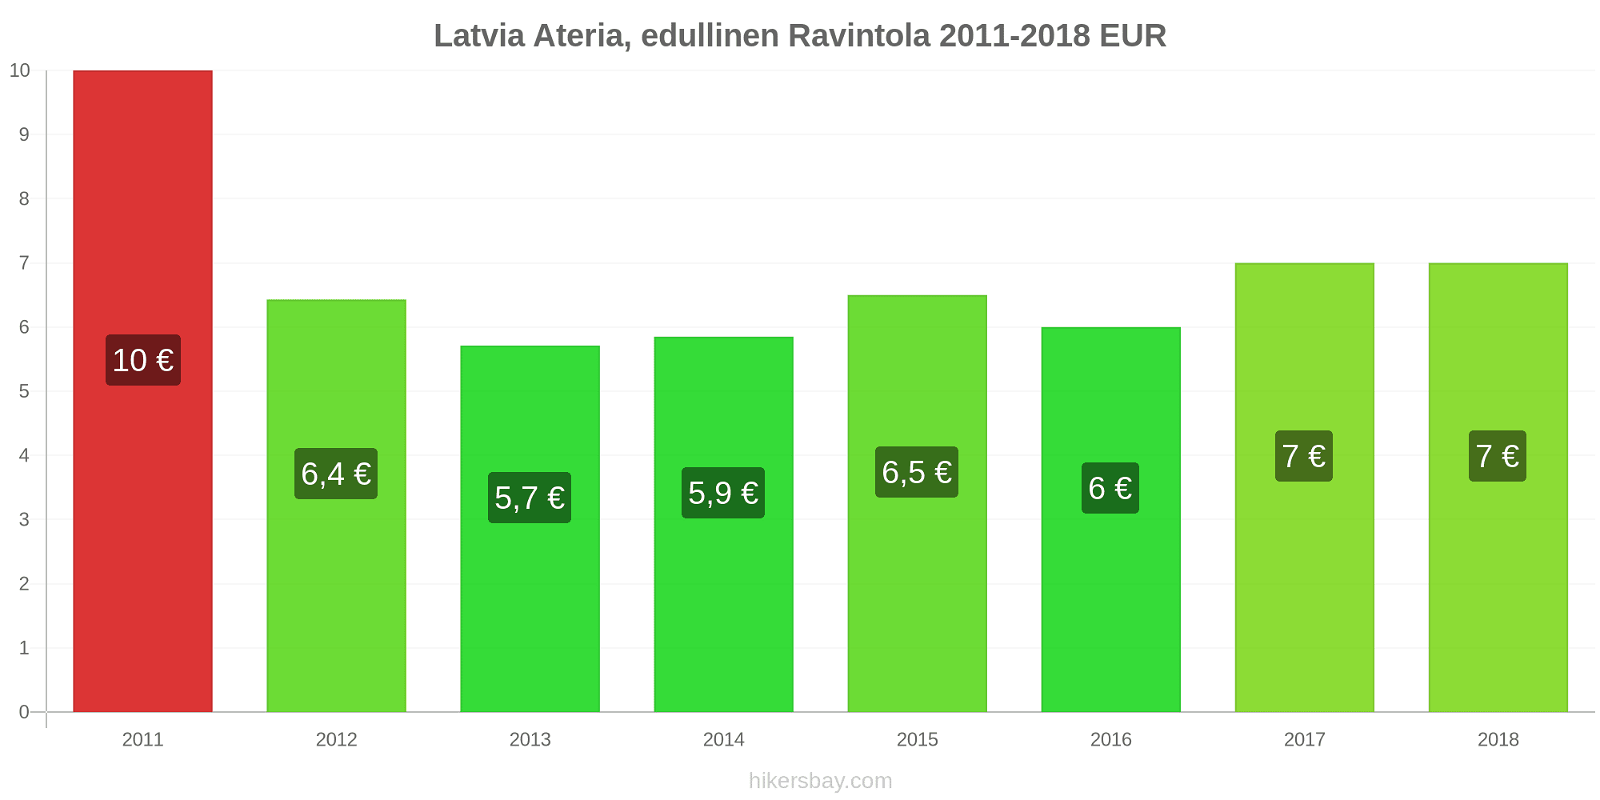 Latvia hintojen muutokset Ateria edullisessa ravintolassa hikersbay.com